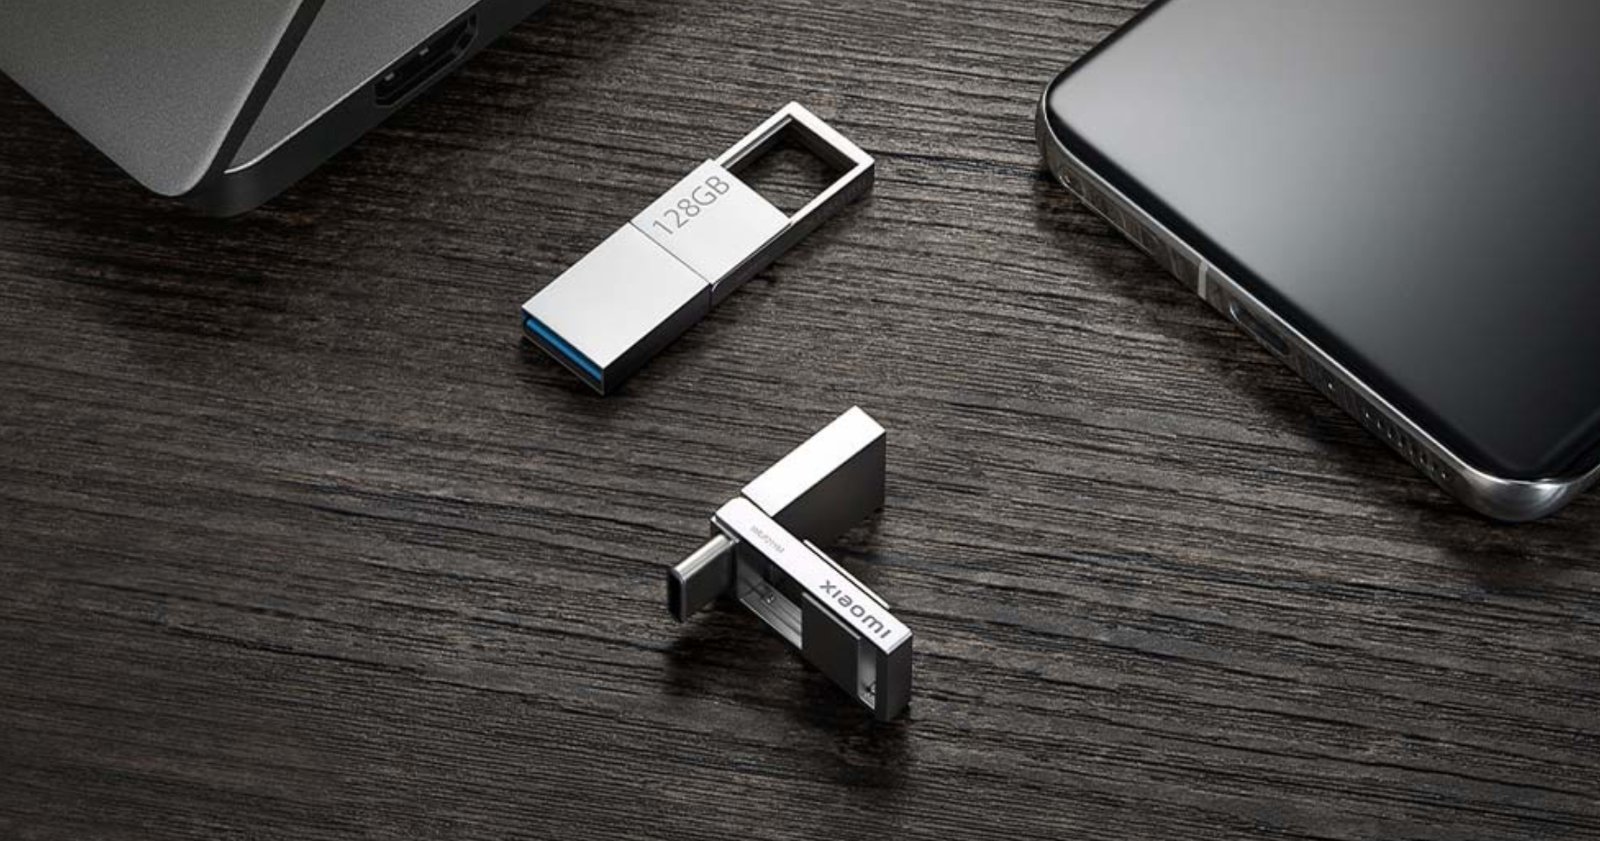 La súper memoria USB de Xiaomi: su nuevo gadget alcanza una velocidad de lectura de 150MB/s